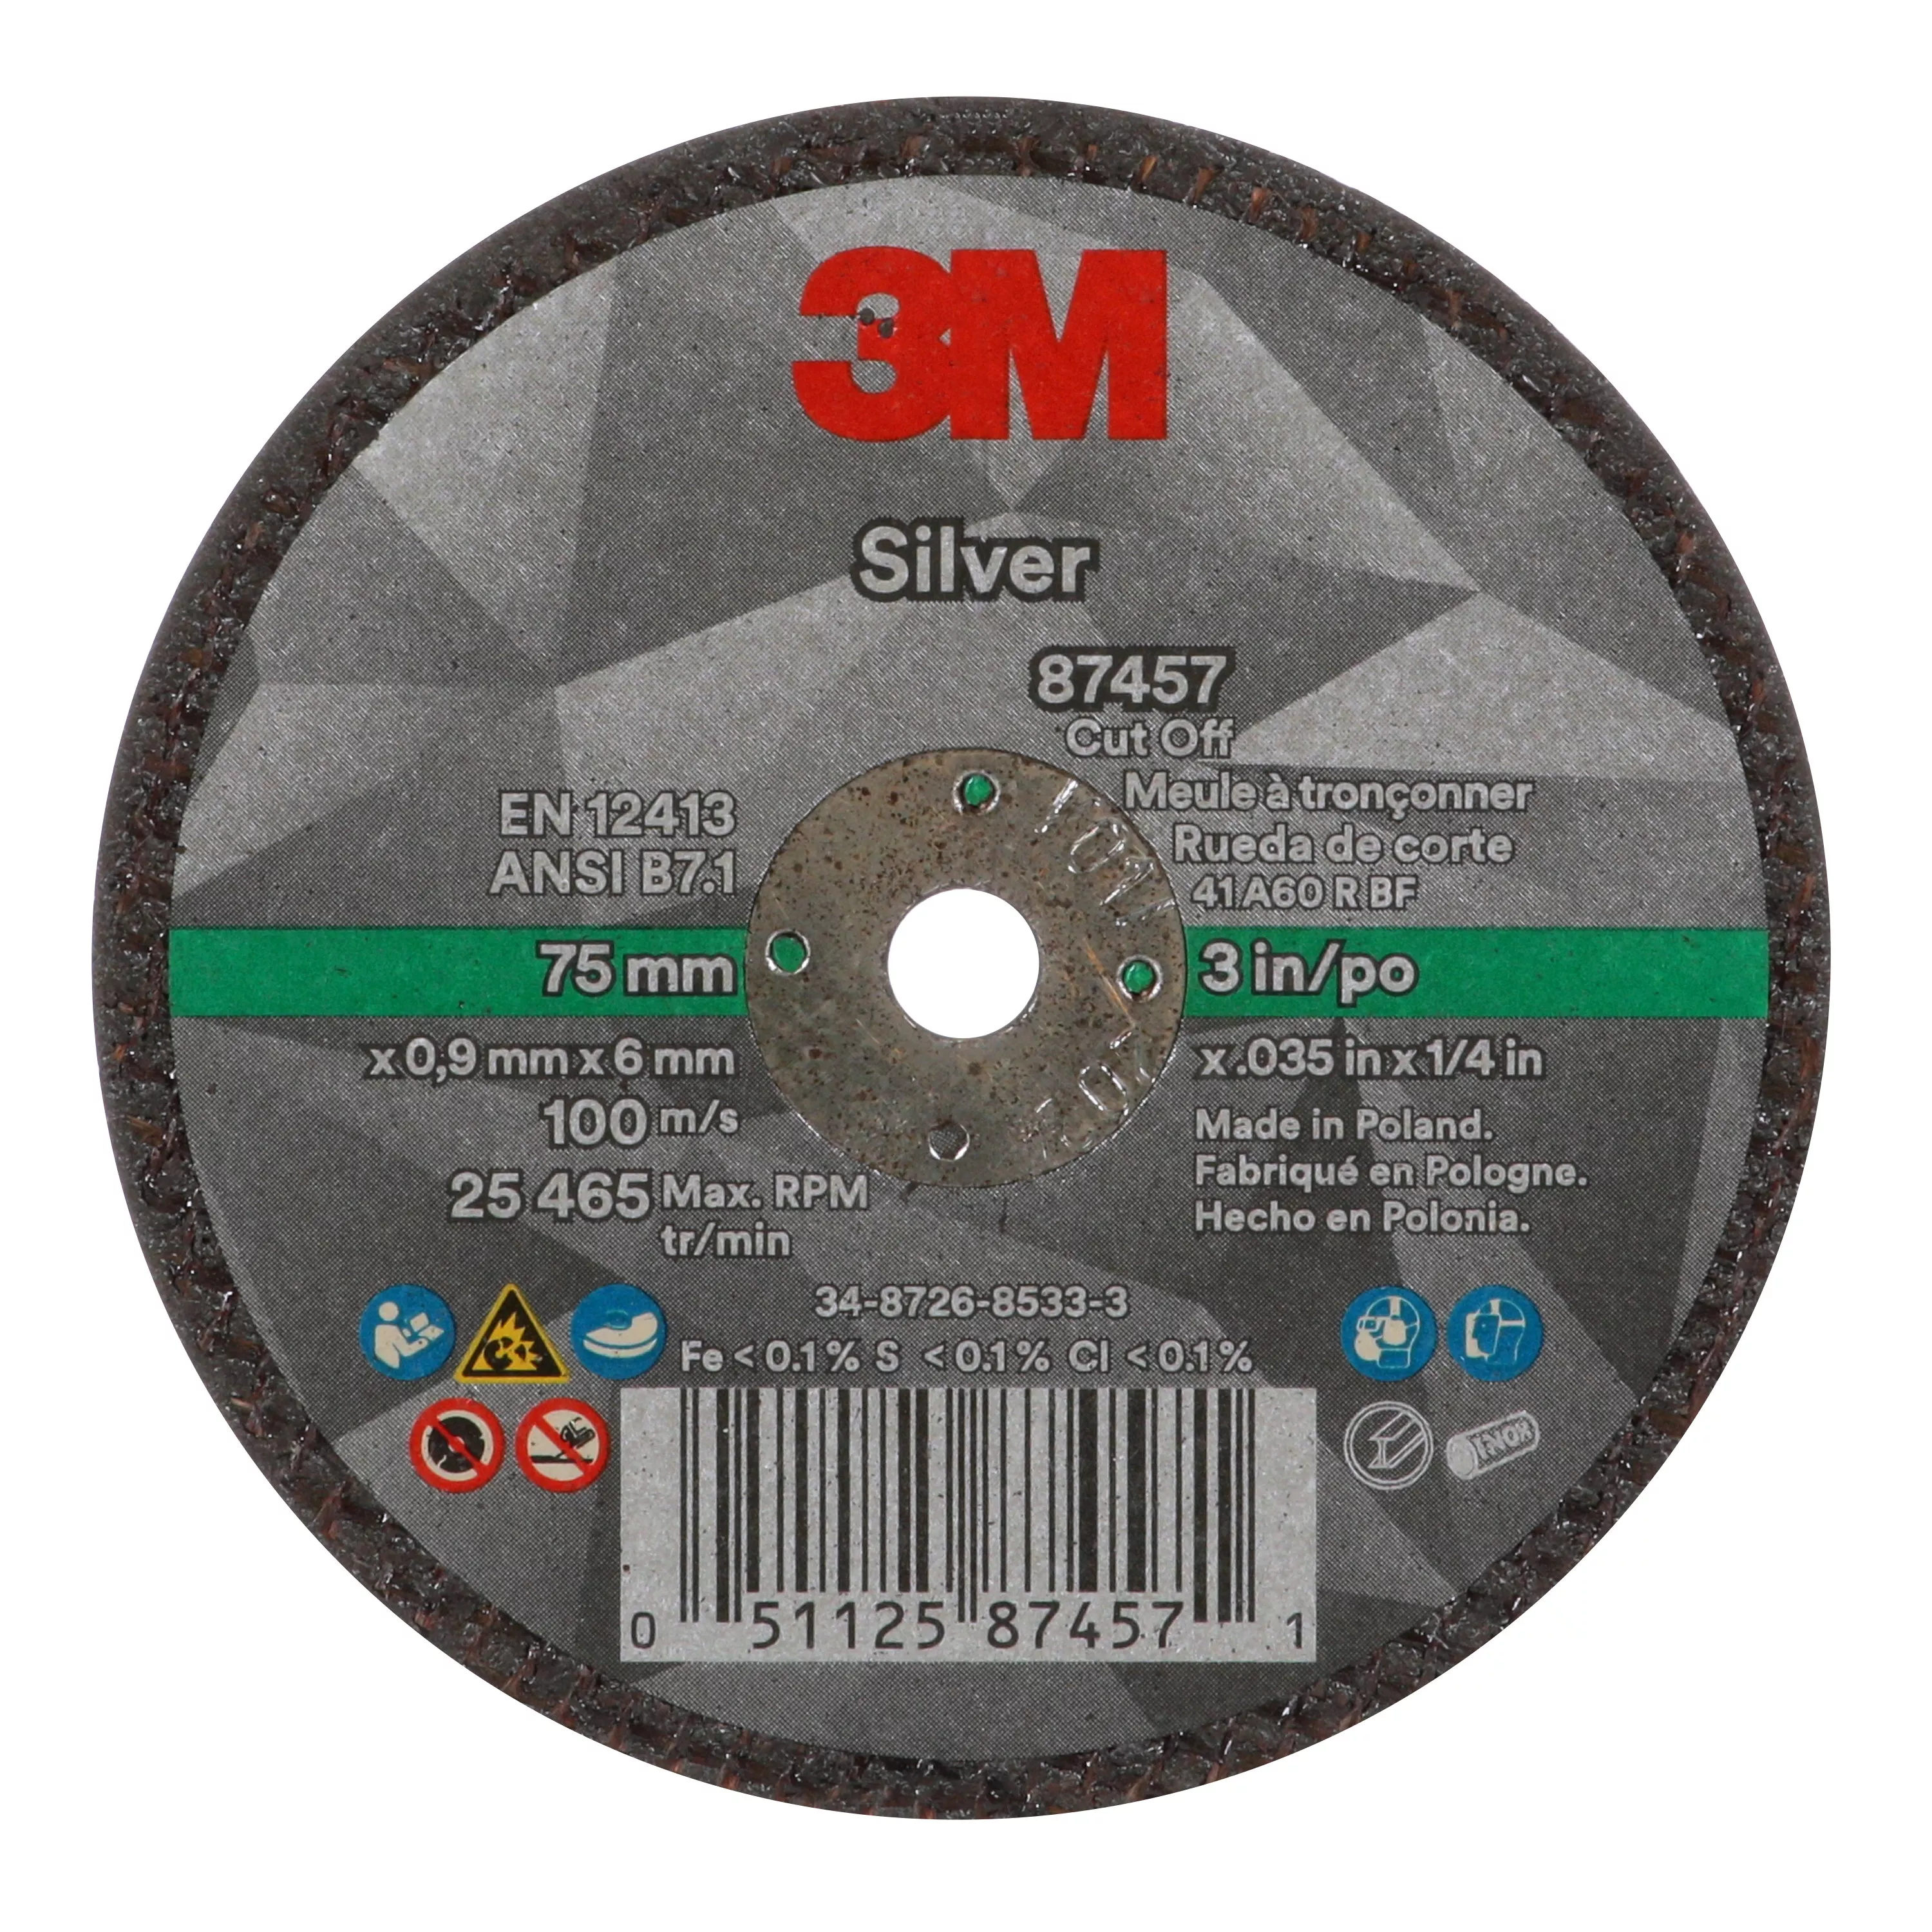 SKU 7100138406 | 3M™ Silver Cut-Off Wheel